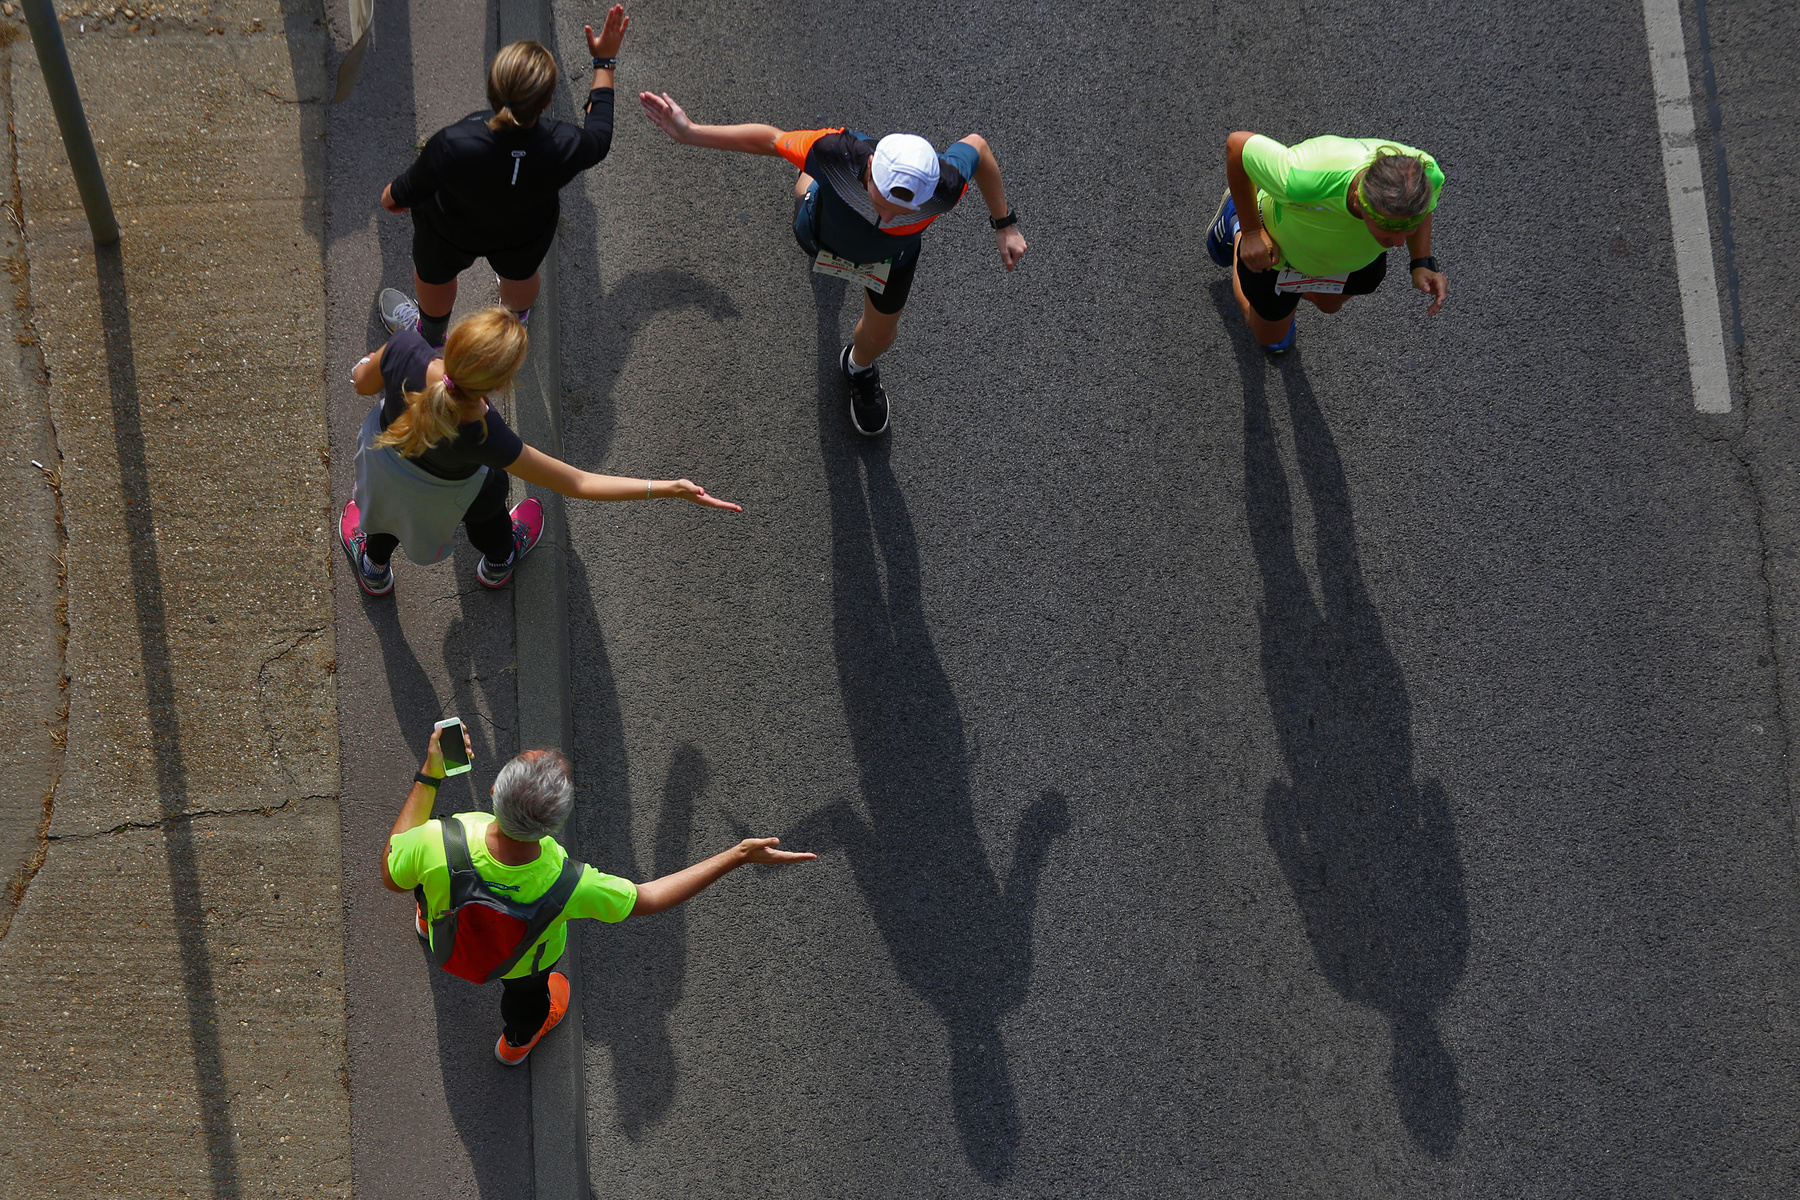 
Csere Gáspár elsõként ér célba a 33. Spar Budapest Maratonon az ELTE lágymányosi campusánál